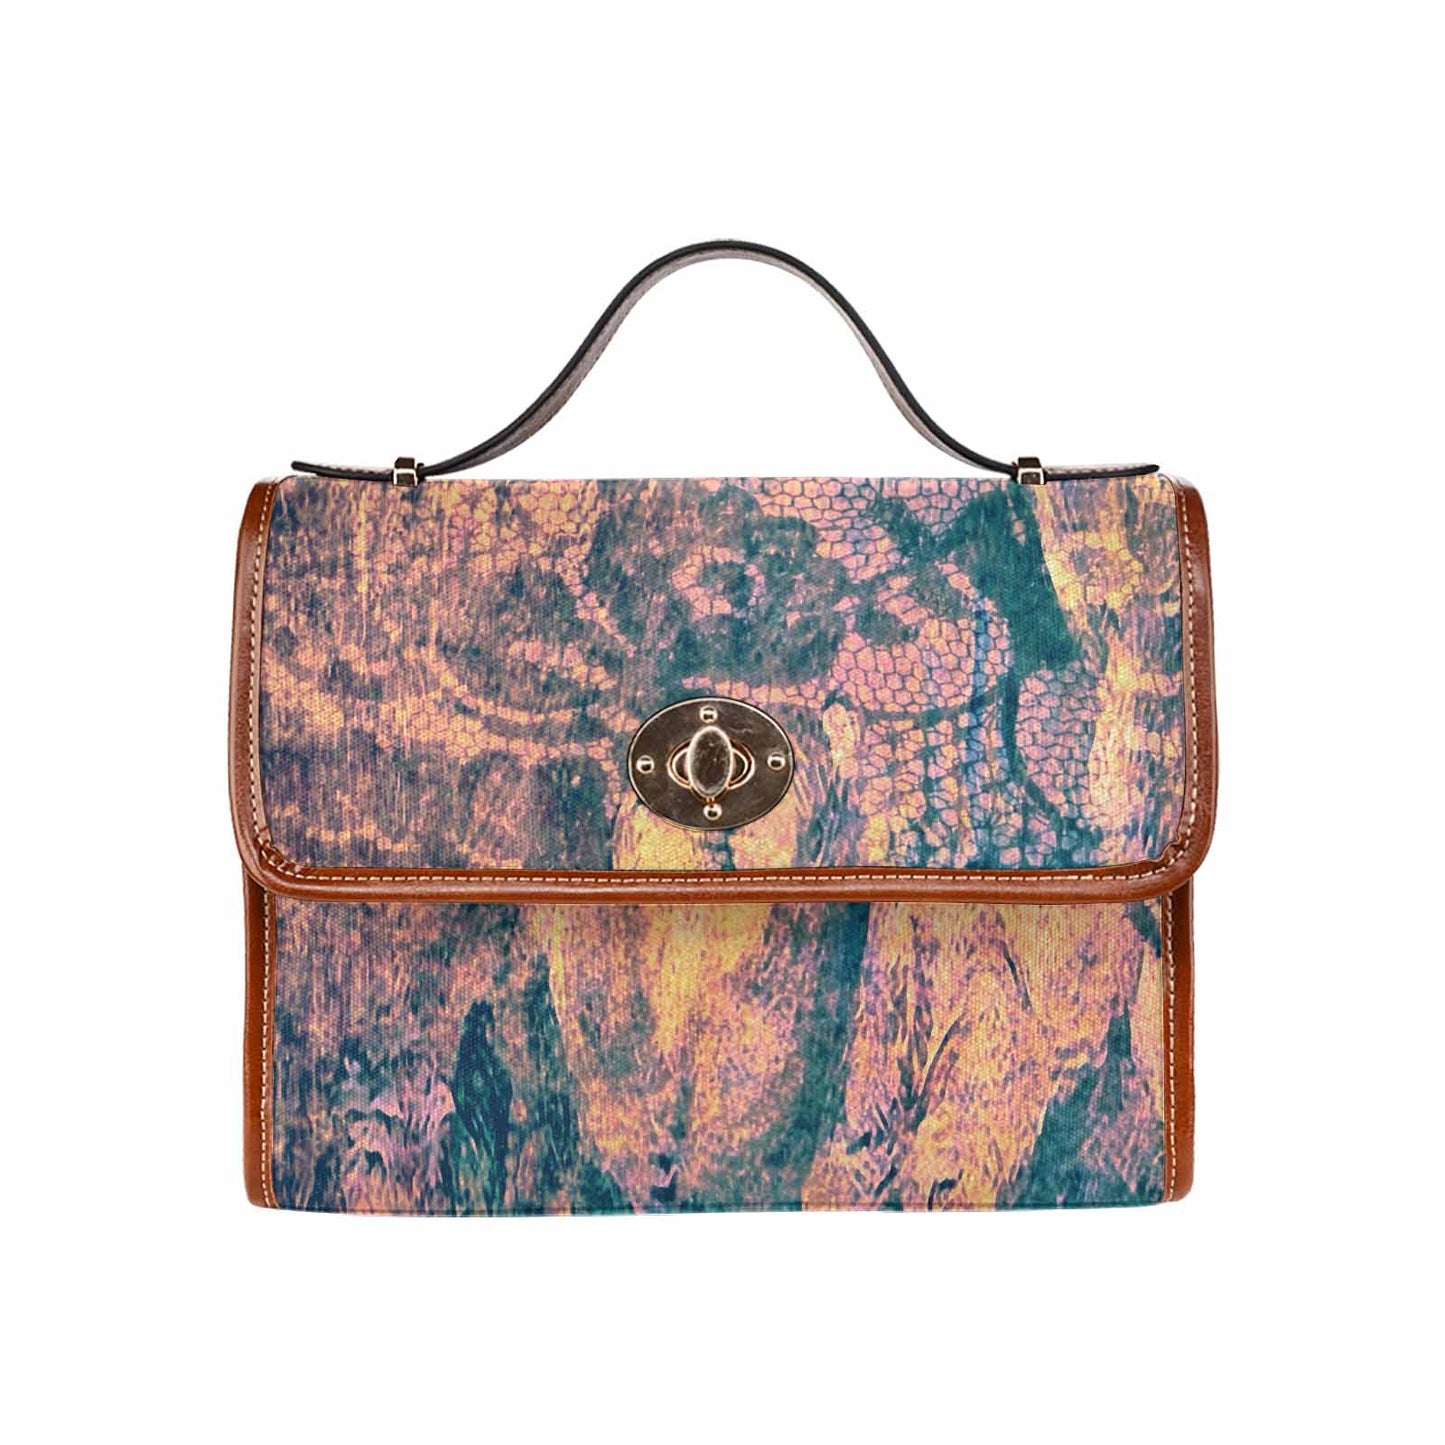 Vintage Floral Handbag, Design 17XX Model 1695341 C20